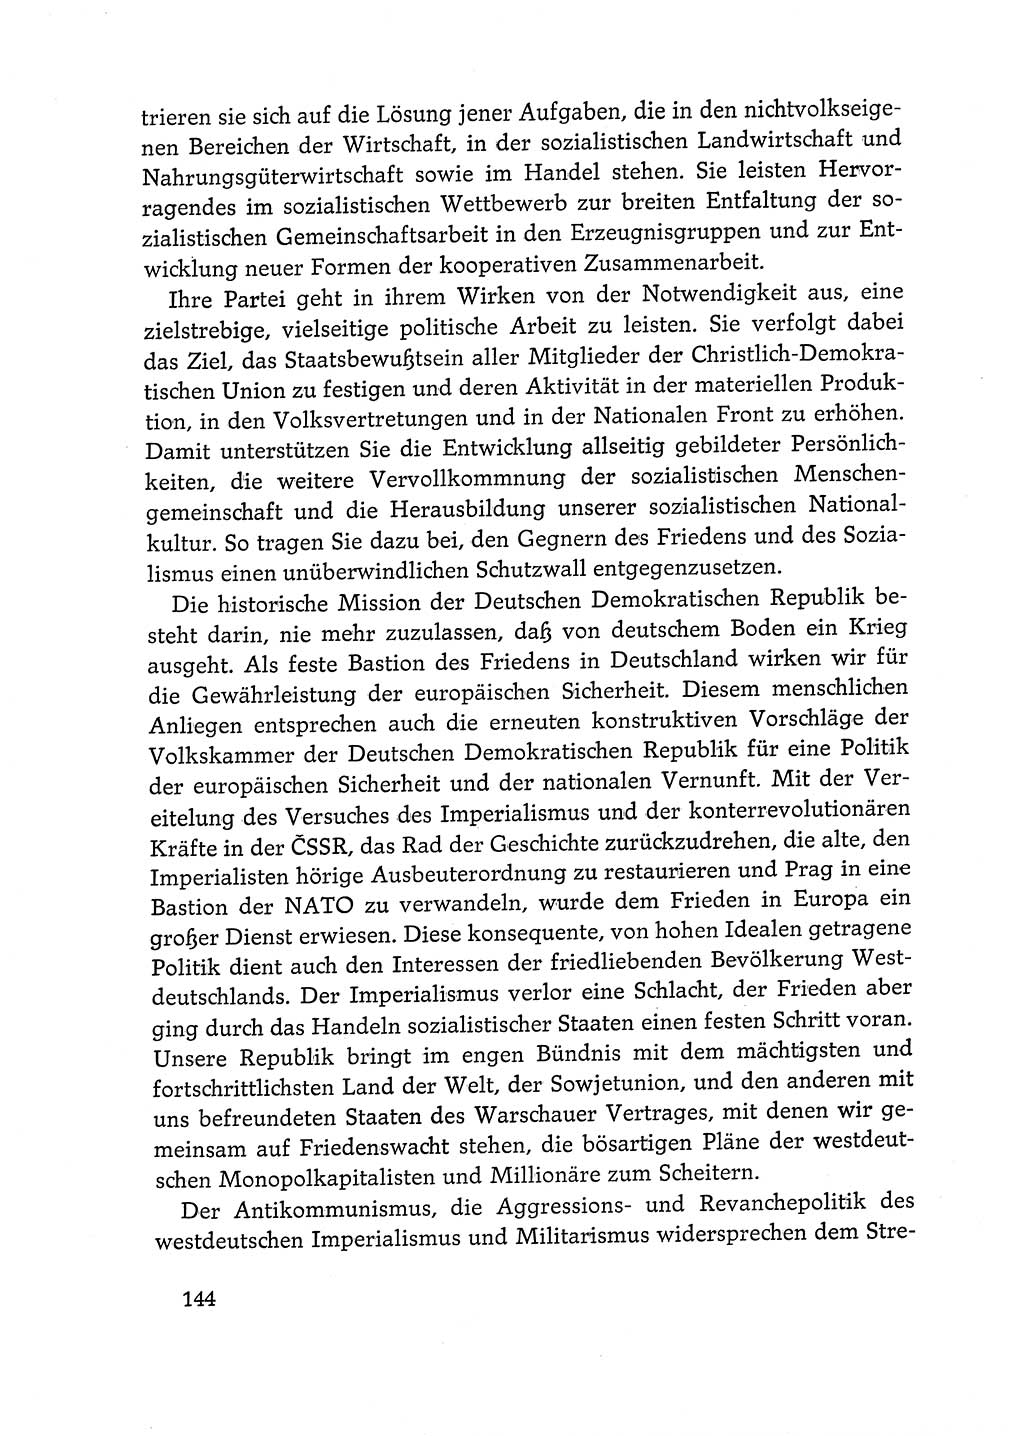 Dokumente der Sozialistischen Einheitspartei Deutschlands (SED) [Deutsche Demokratische Republik (DDR)] 1968-1969, Seite 144 (Dok. SED DDR 1968-1969, S. 144)